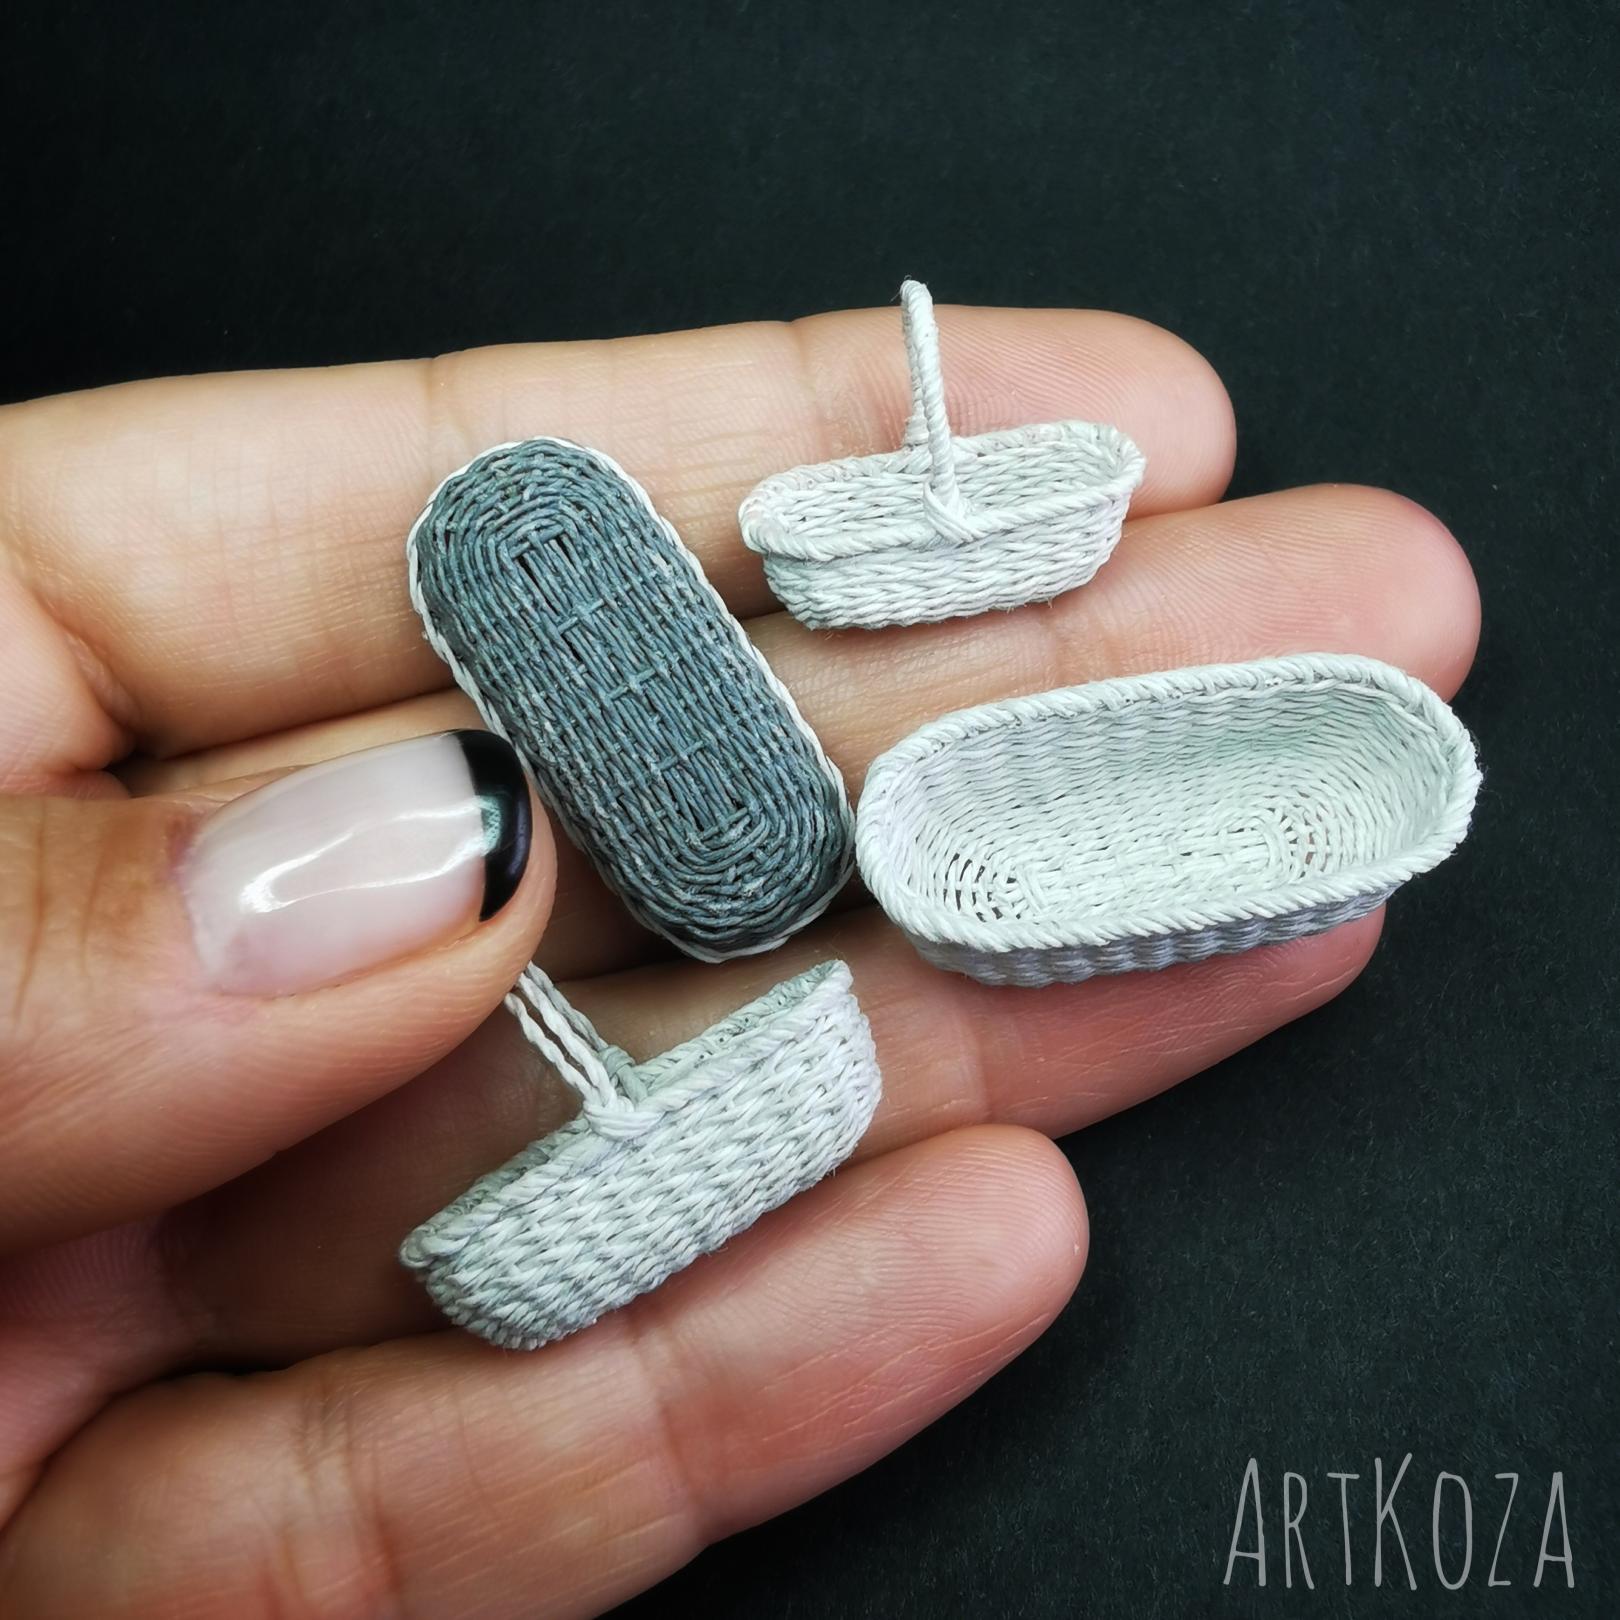 Miniature wicker basket